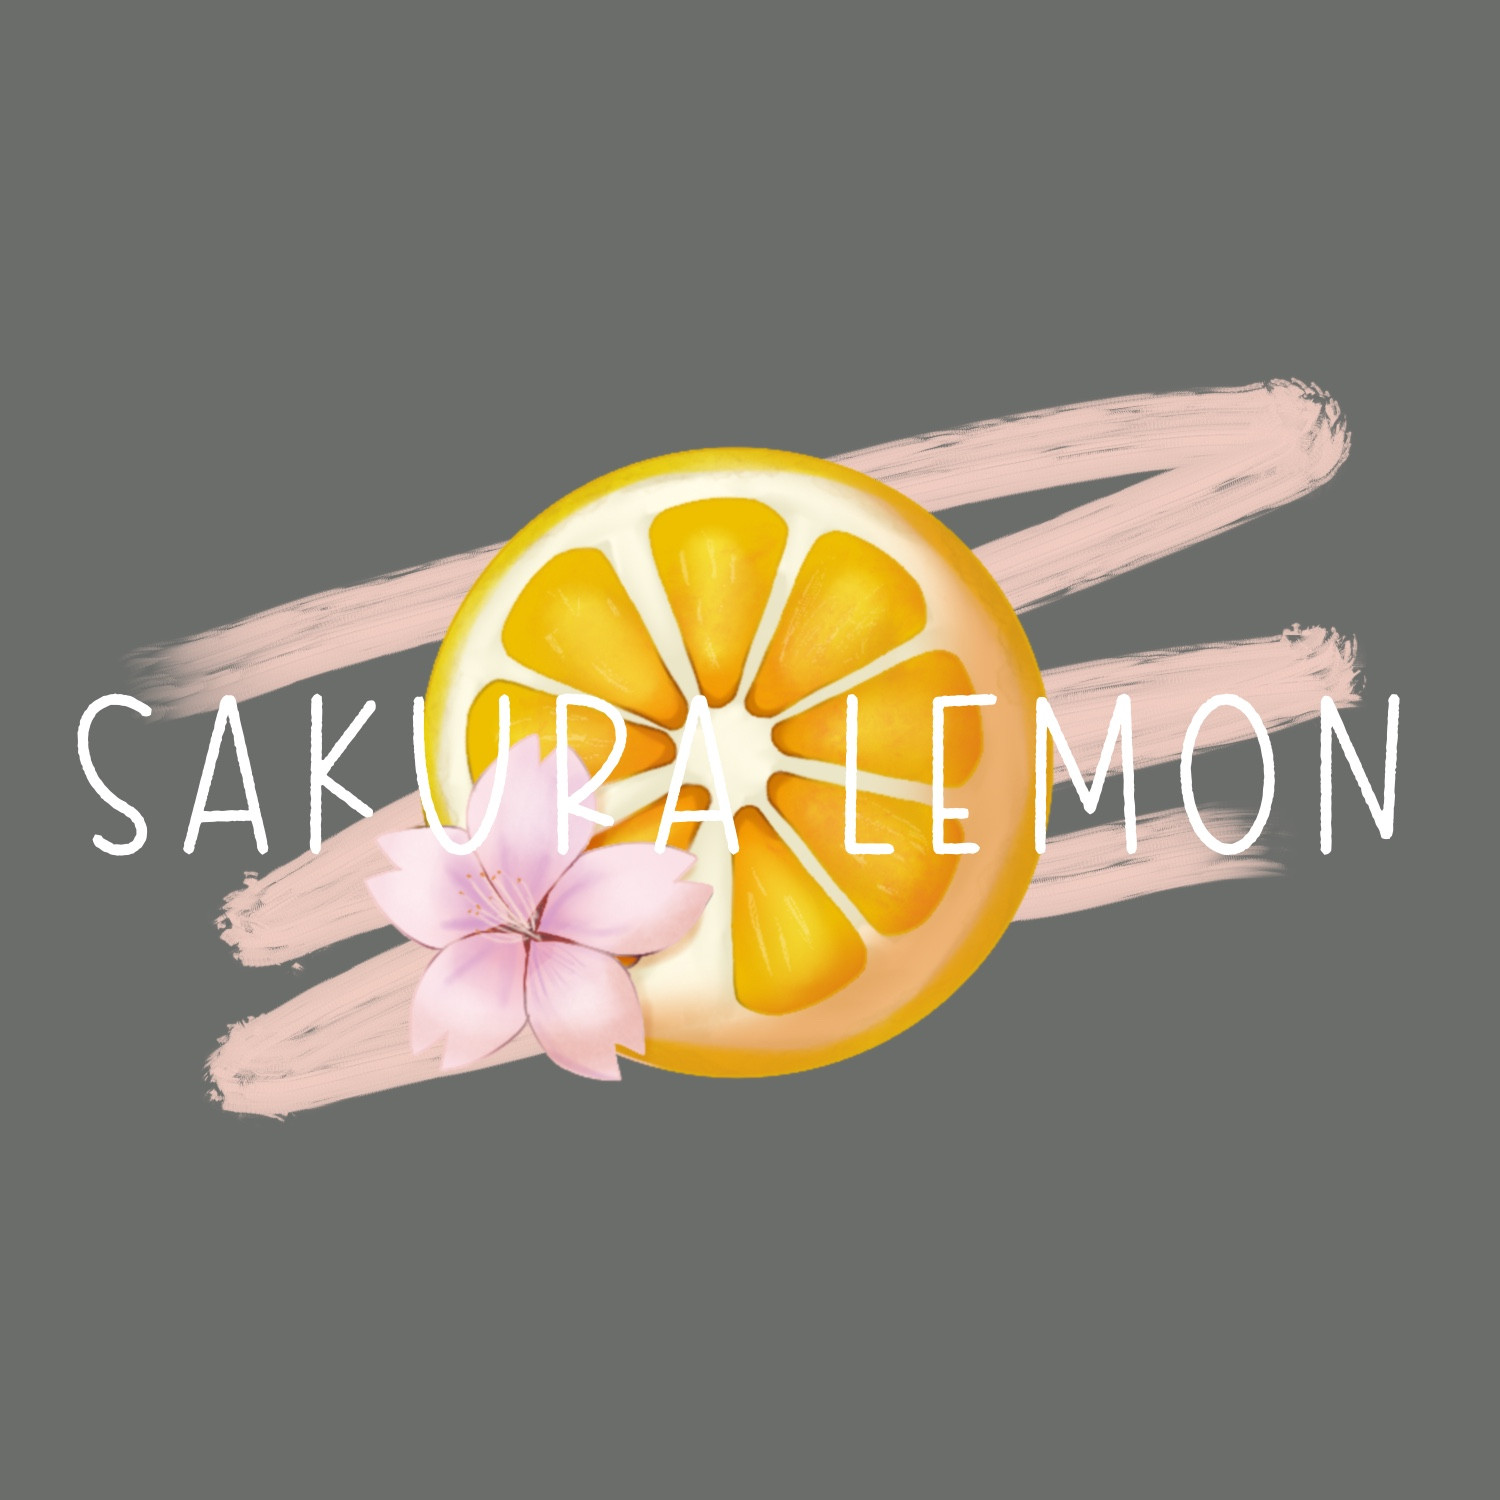 Sakura Lemon Designs's profielfoto